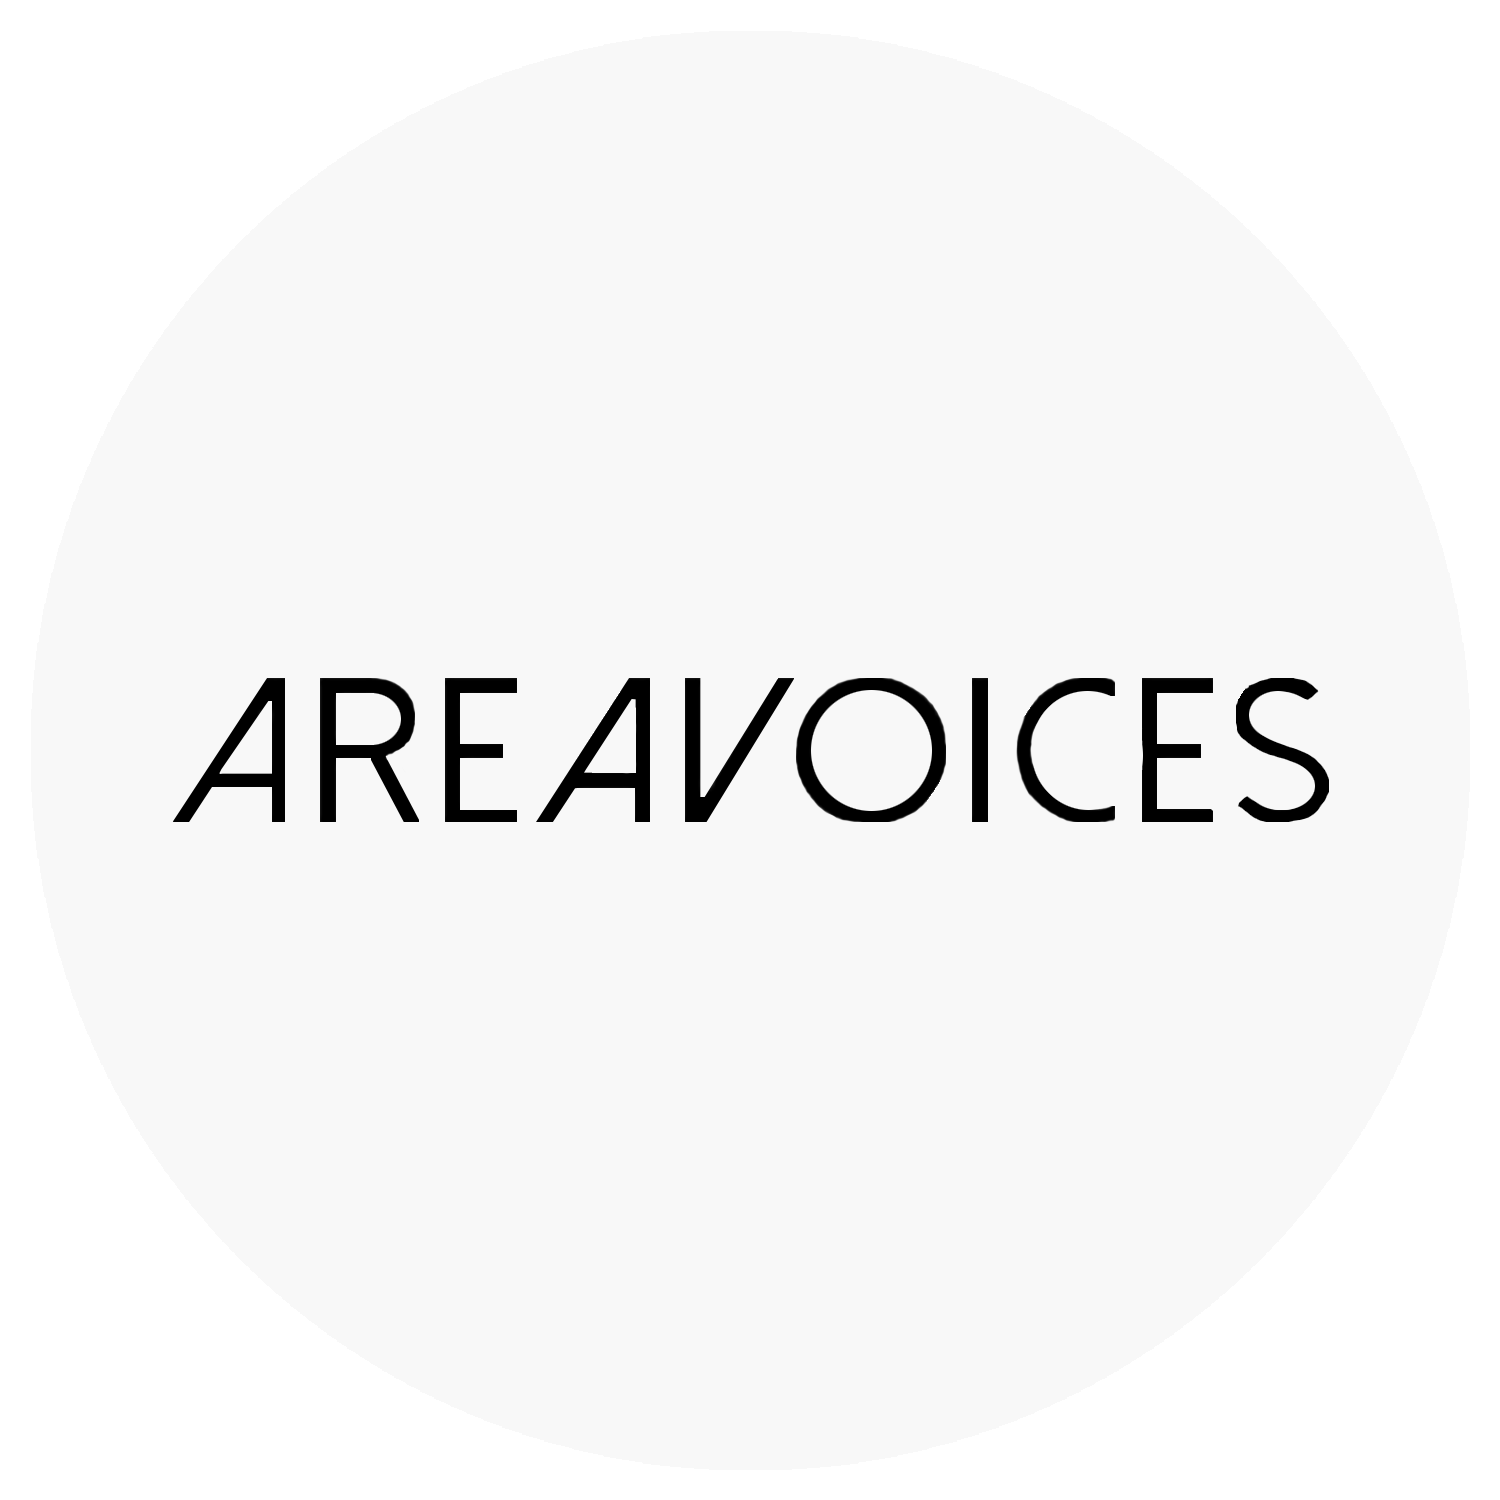 Area Voices